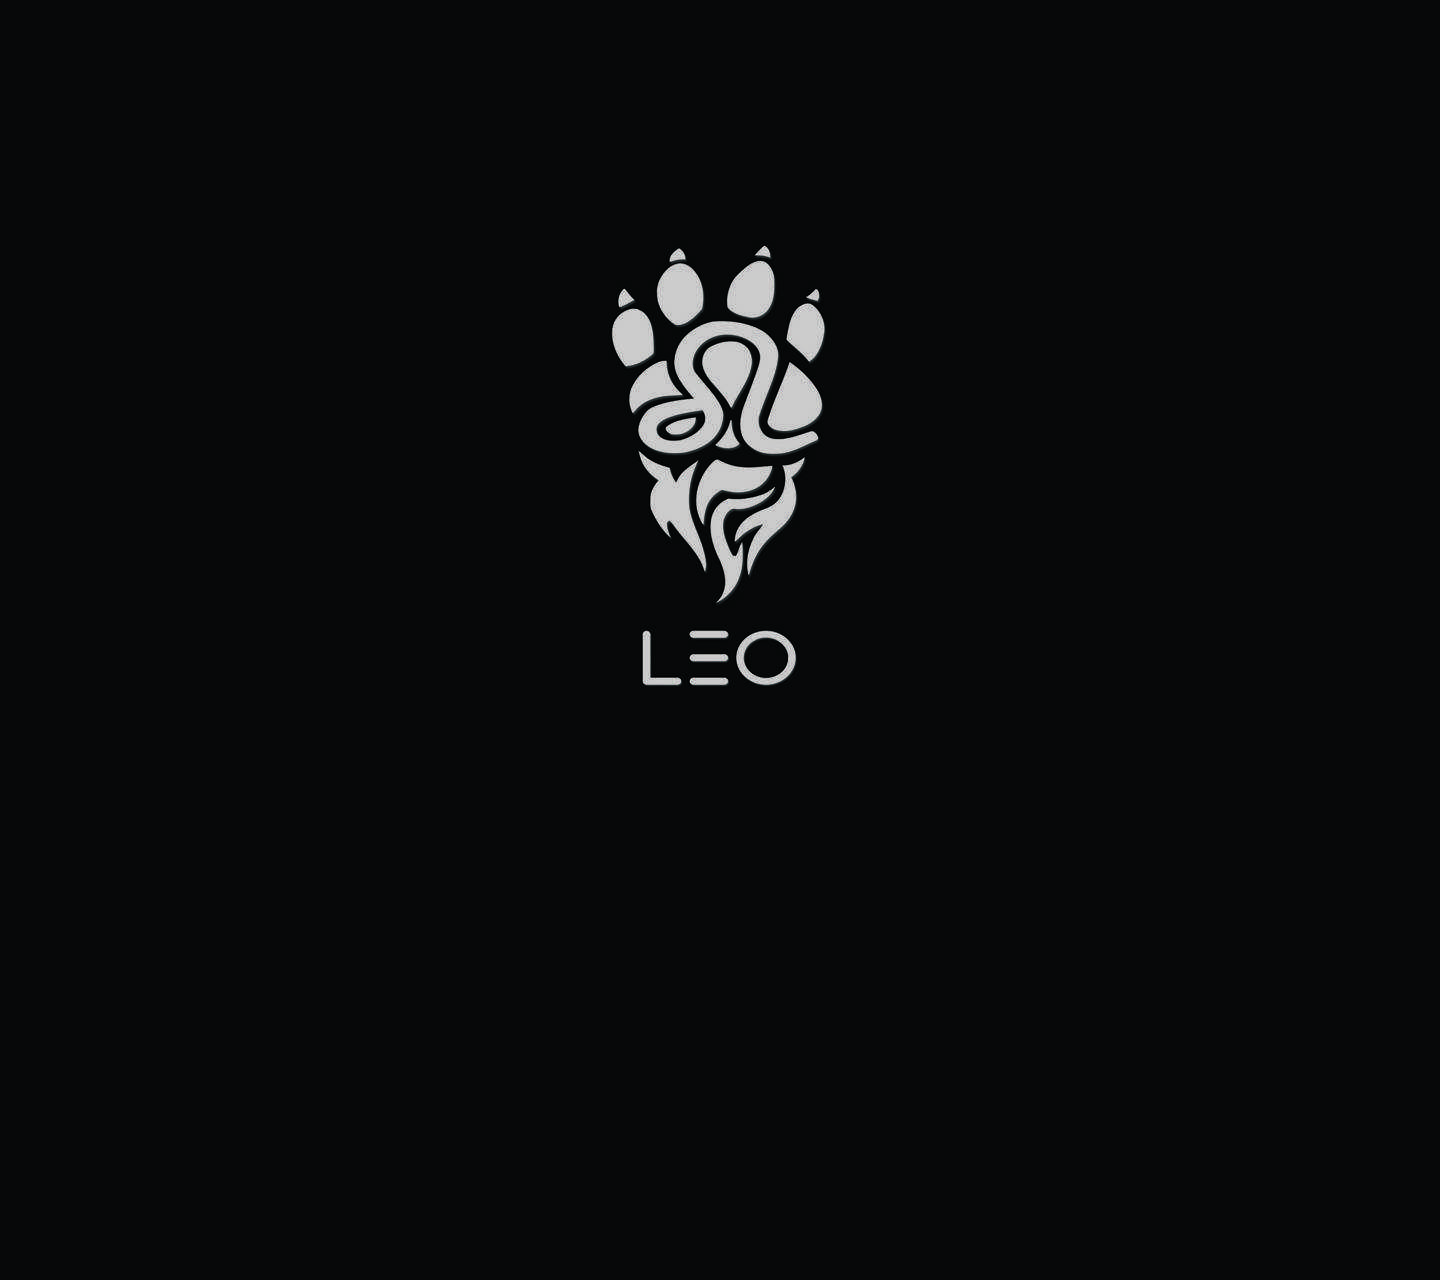 A Leo logo with a lion paw and flames - Leo